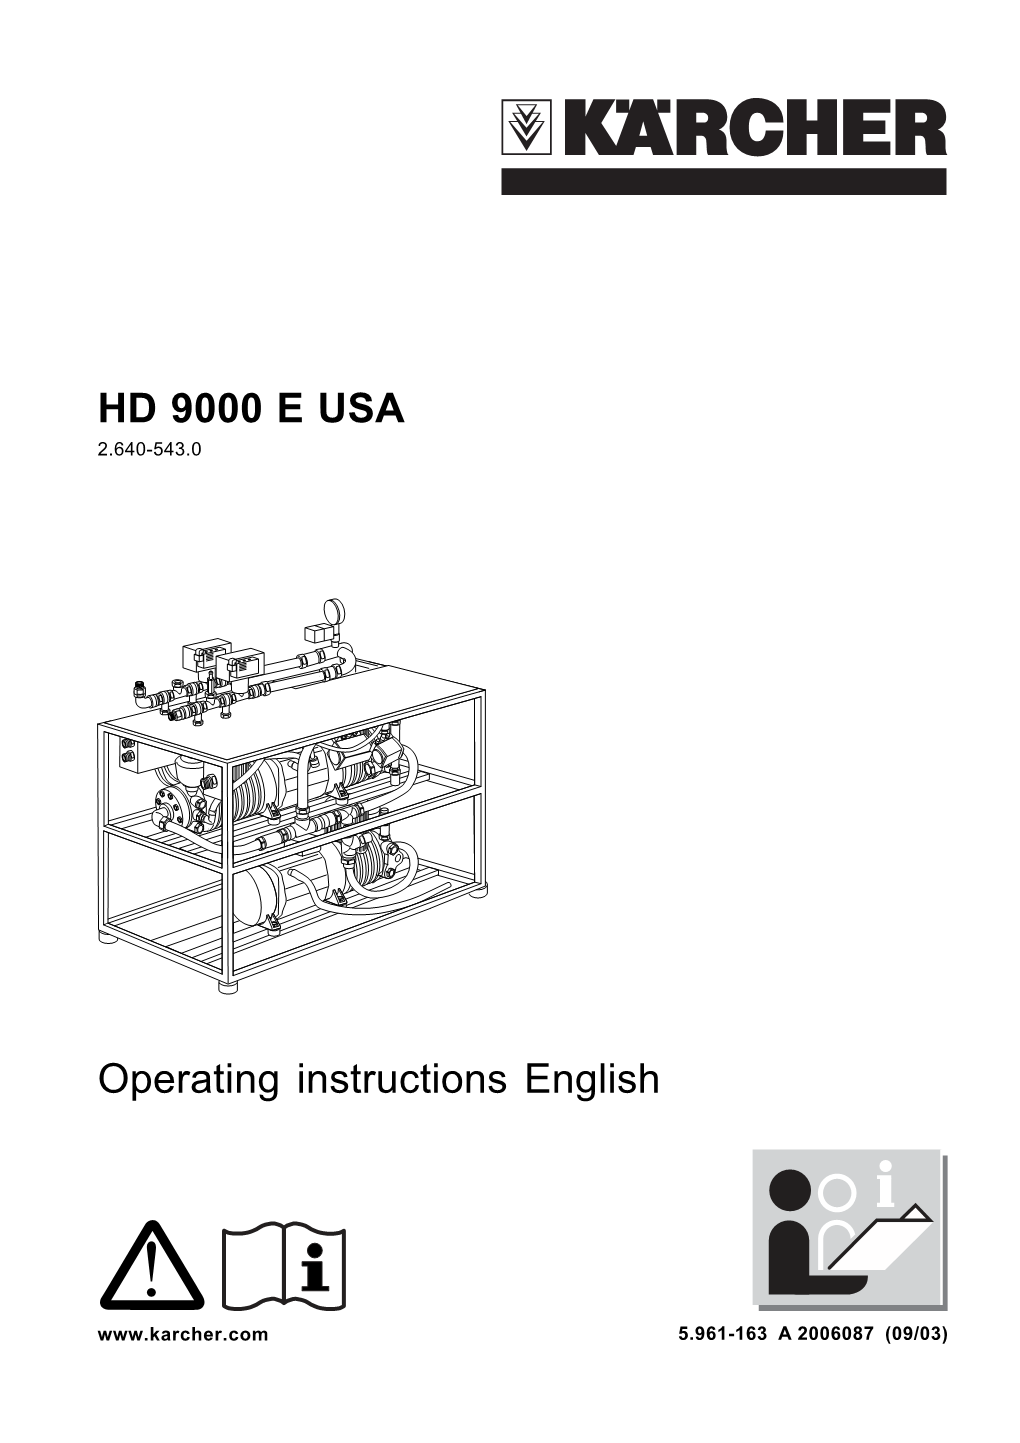 HD 9000 E USA Operating Instructions English